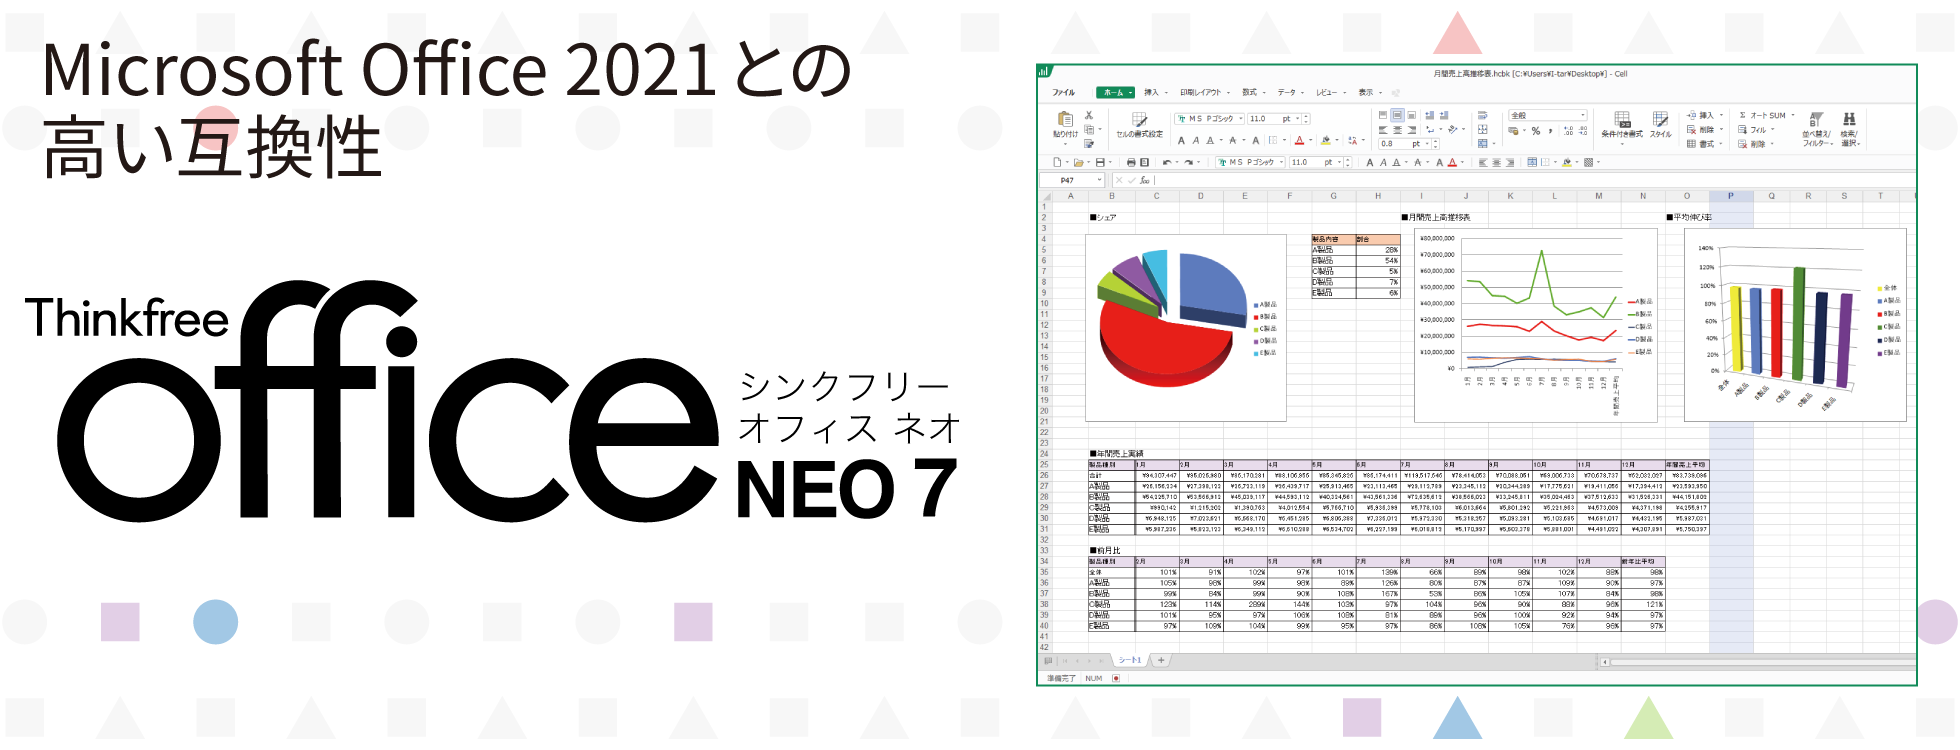 誠実 ソースネクスト Thinkfree Office NEO 7 Windows用 ｼﾝｸﾌﾘｰｵﾌｨｽﾈｵ7 keukacomfortcarehome.org